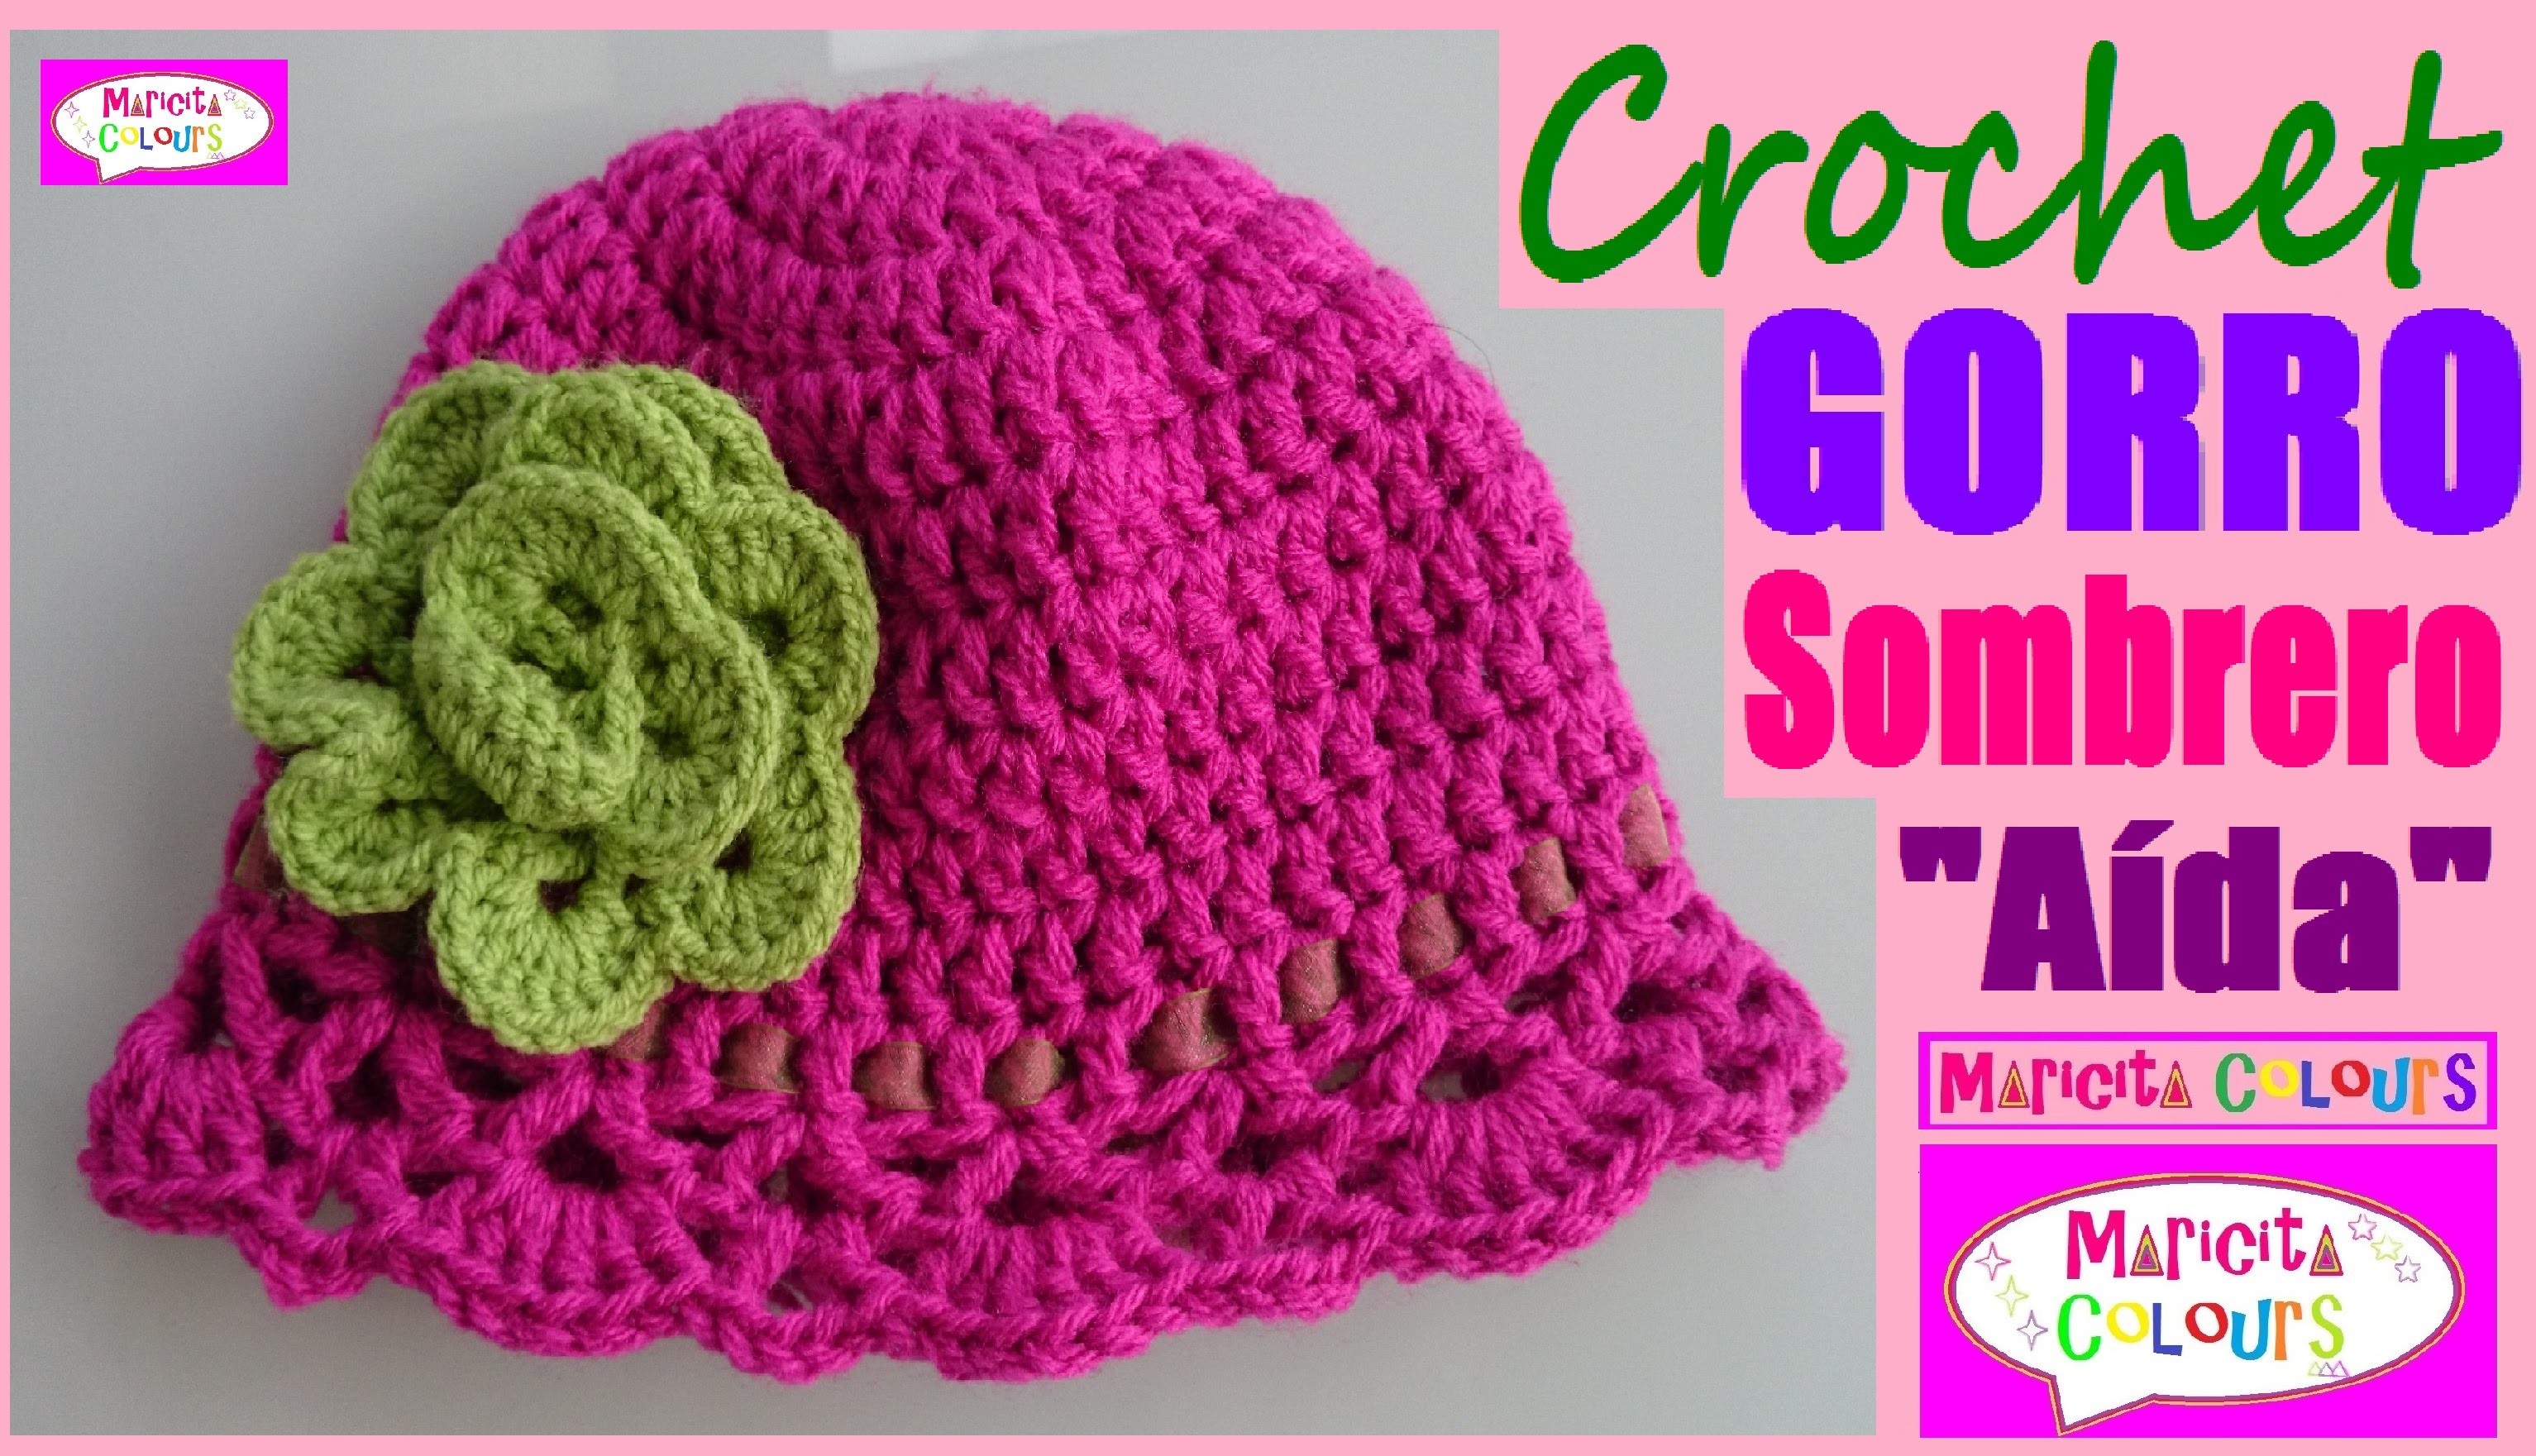 Gorro Sombrero "Aída" Niños (Parte 1) Crochet todas TALLAS EspañoI y English por Maricita Colours